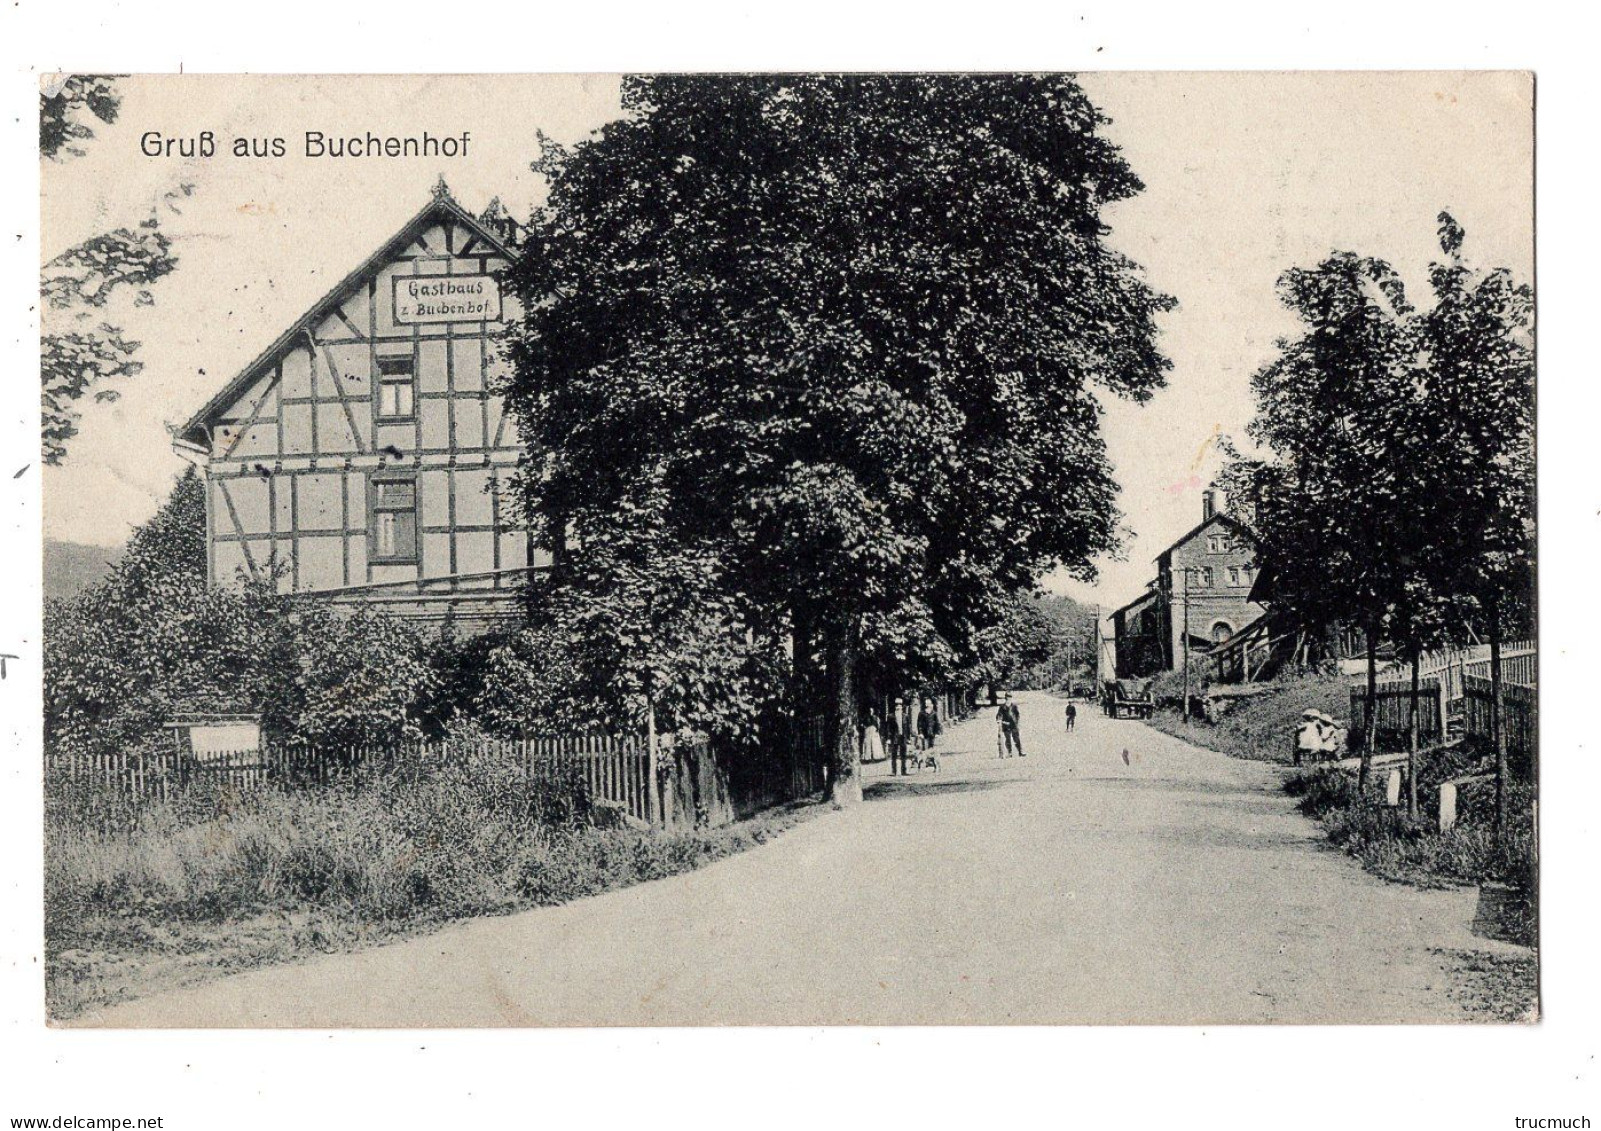 38 - BETZDORF - KIRCHEN - WEHBACH - Gruss Aus BUCHENHOF - Betzdorf